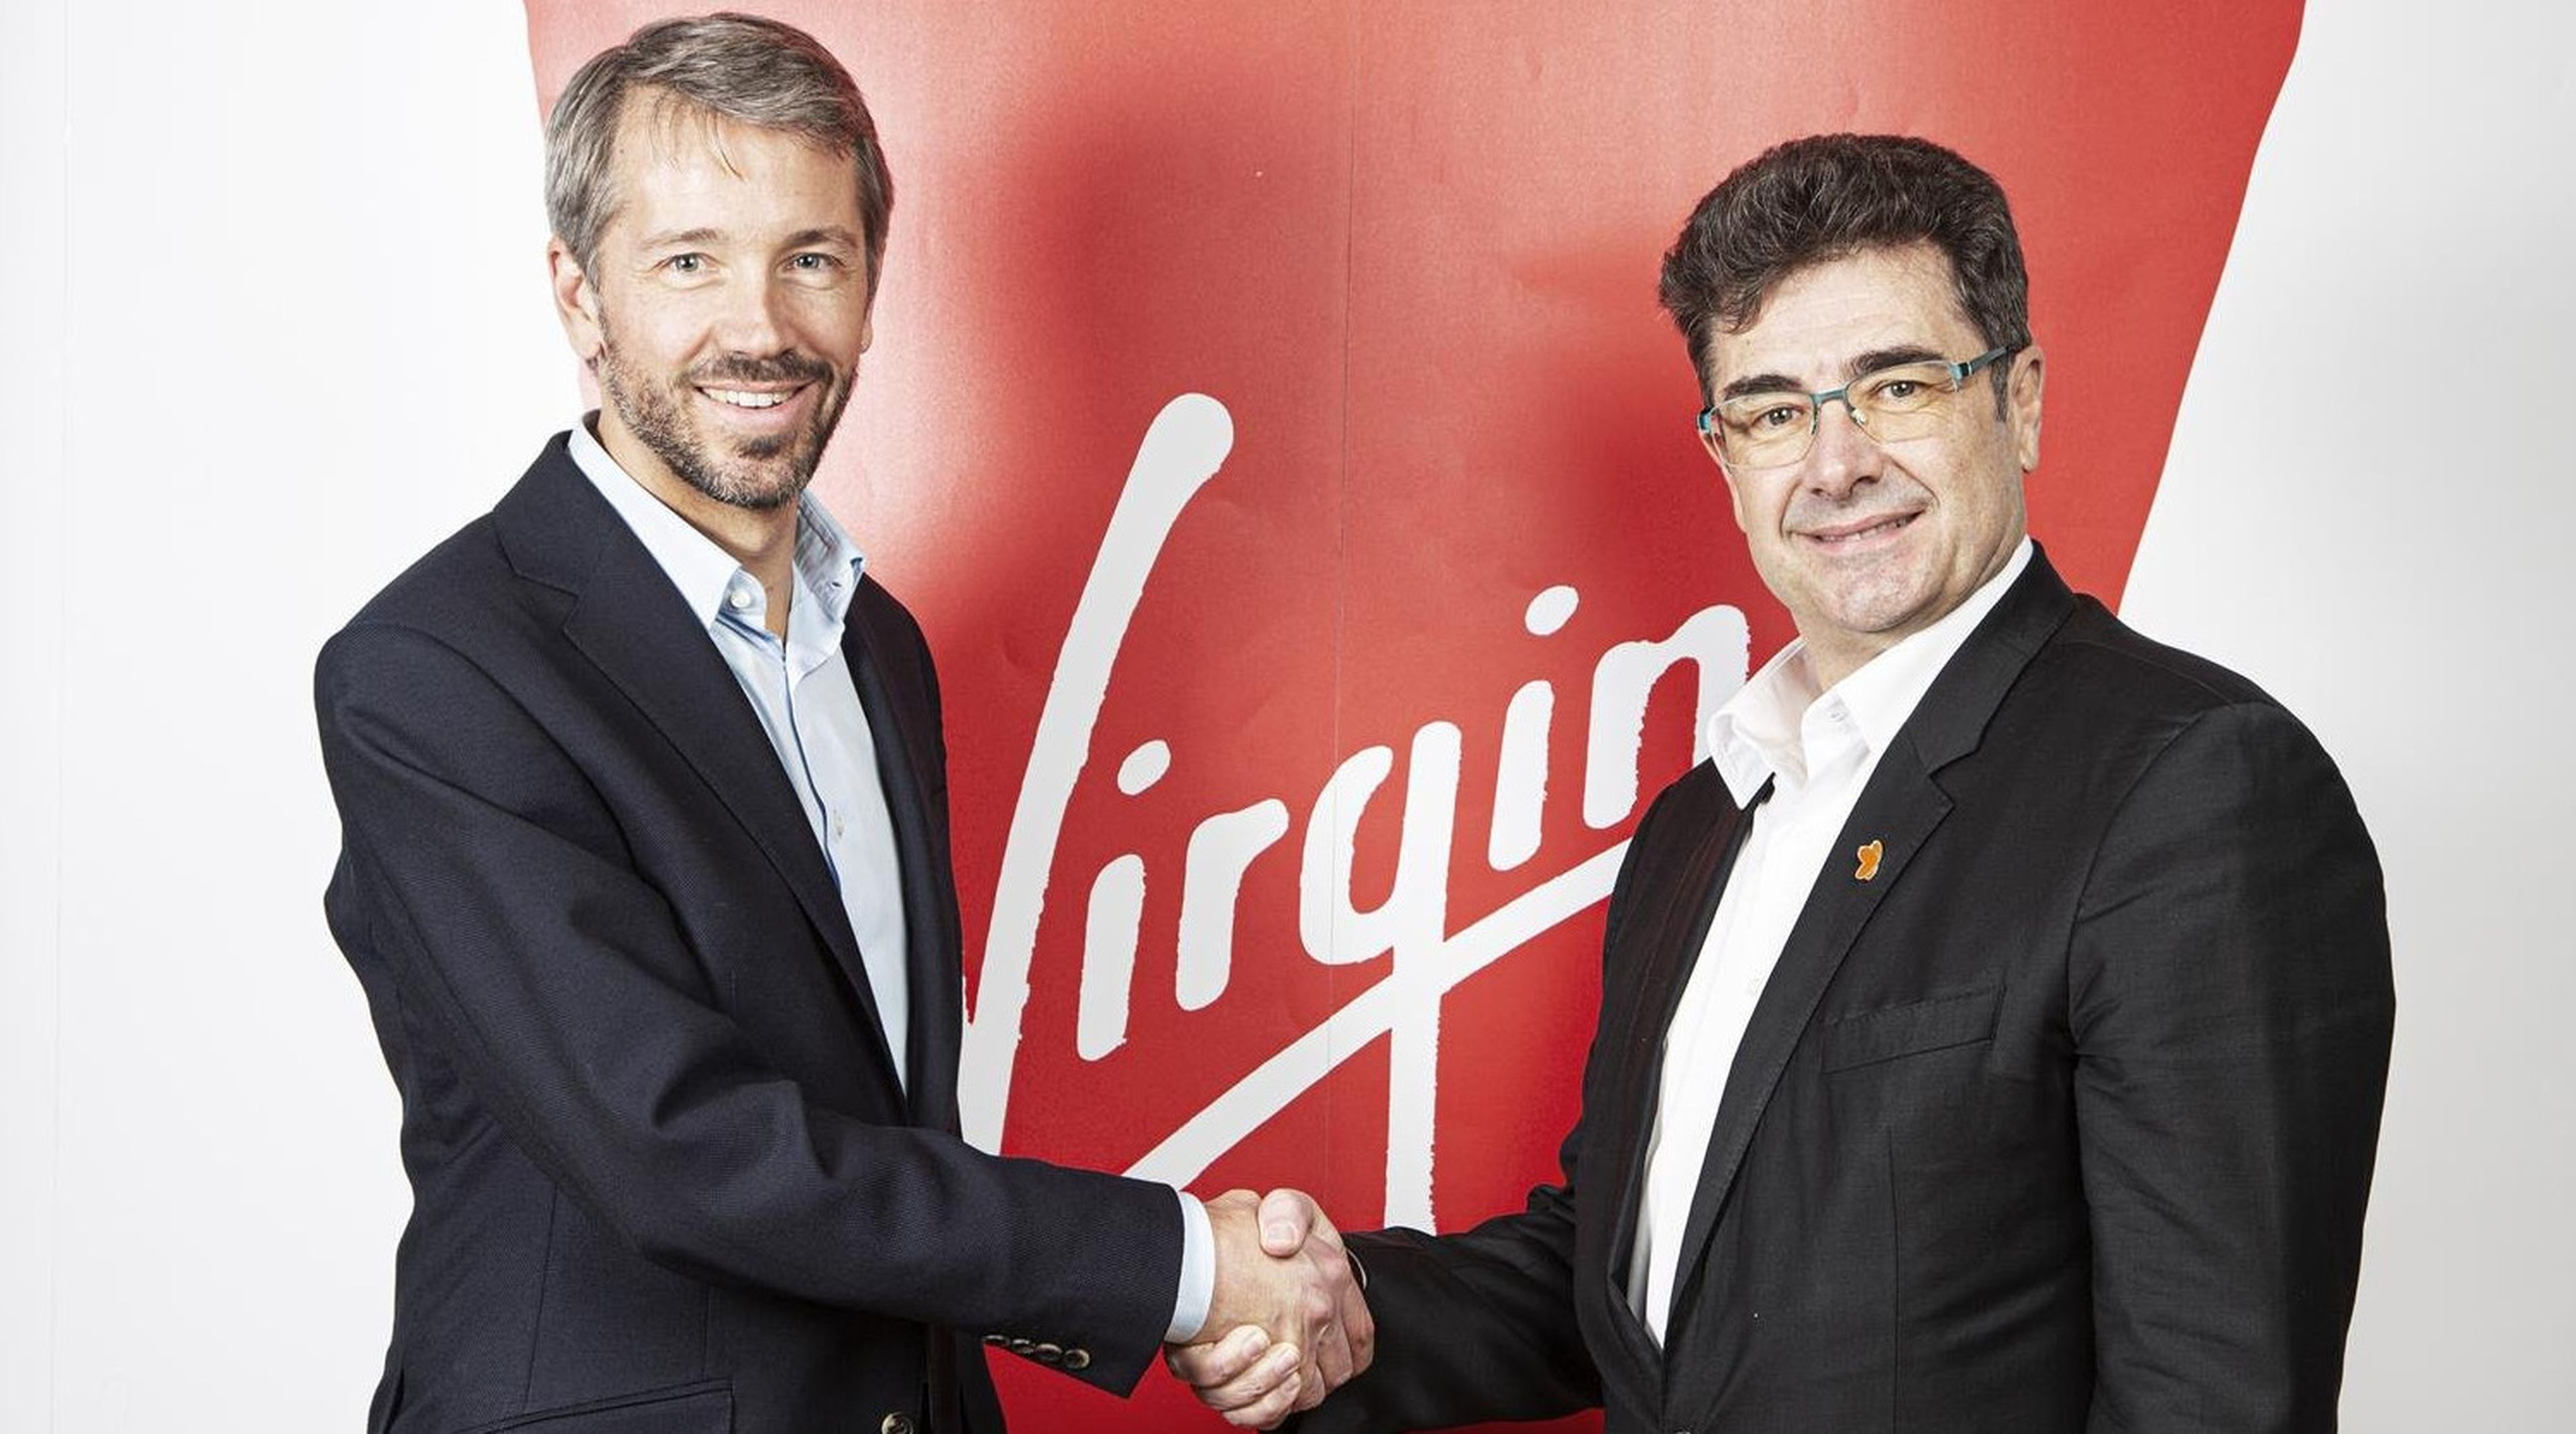 Josh Bayliss, CEO del Grupo Virgin, y José Miguel García, CEO del Grupo Euskaltel